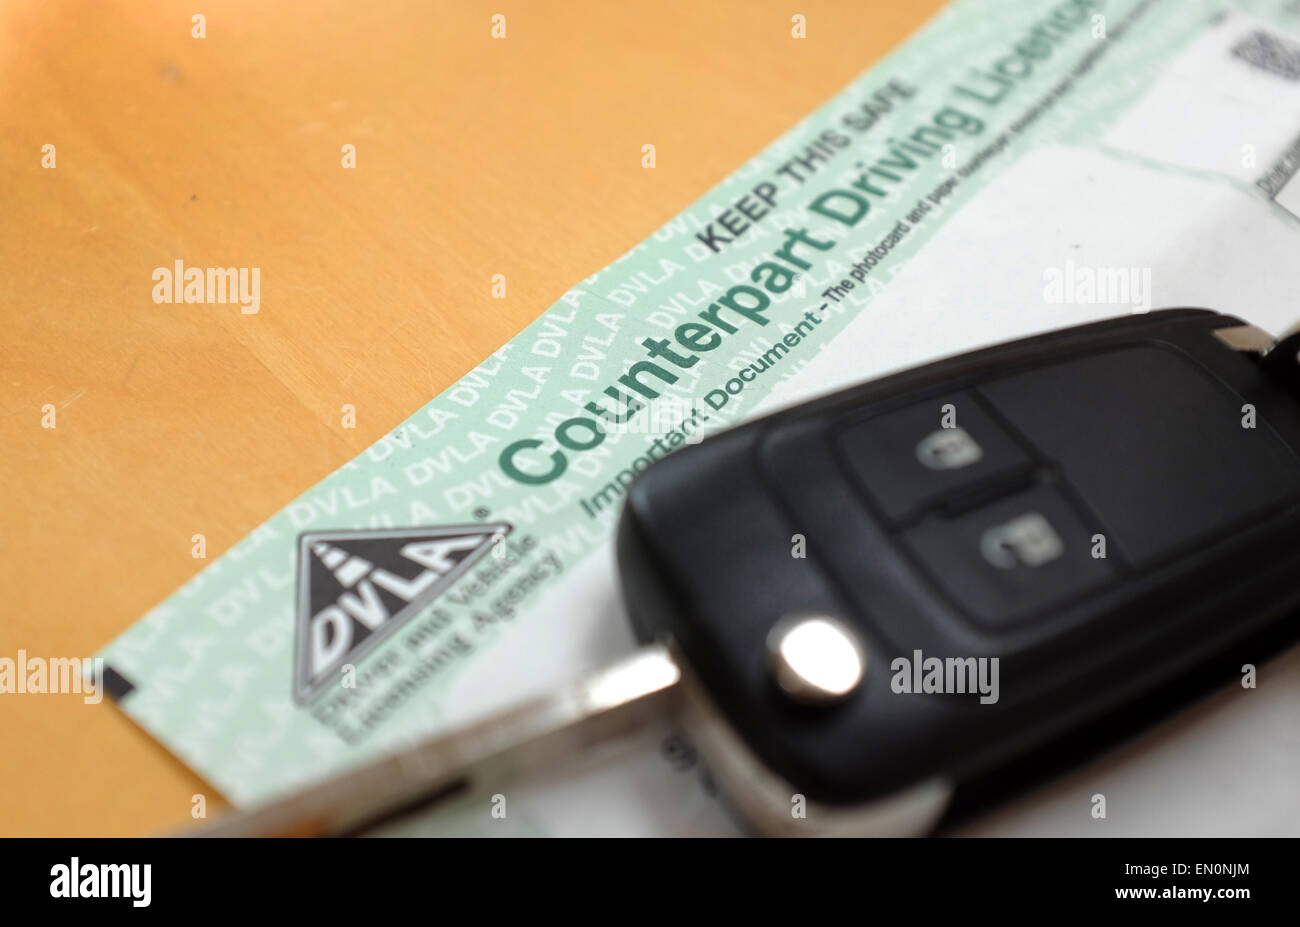 La contrepartie UK driving license du 8 juin 2015 le papier du permis de conduire au Royaume-Uni ne sera plus valide Banque D'Images